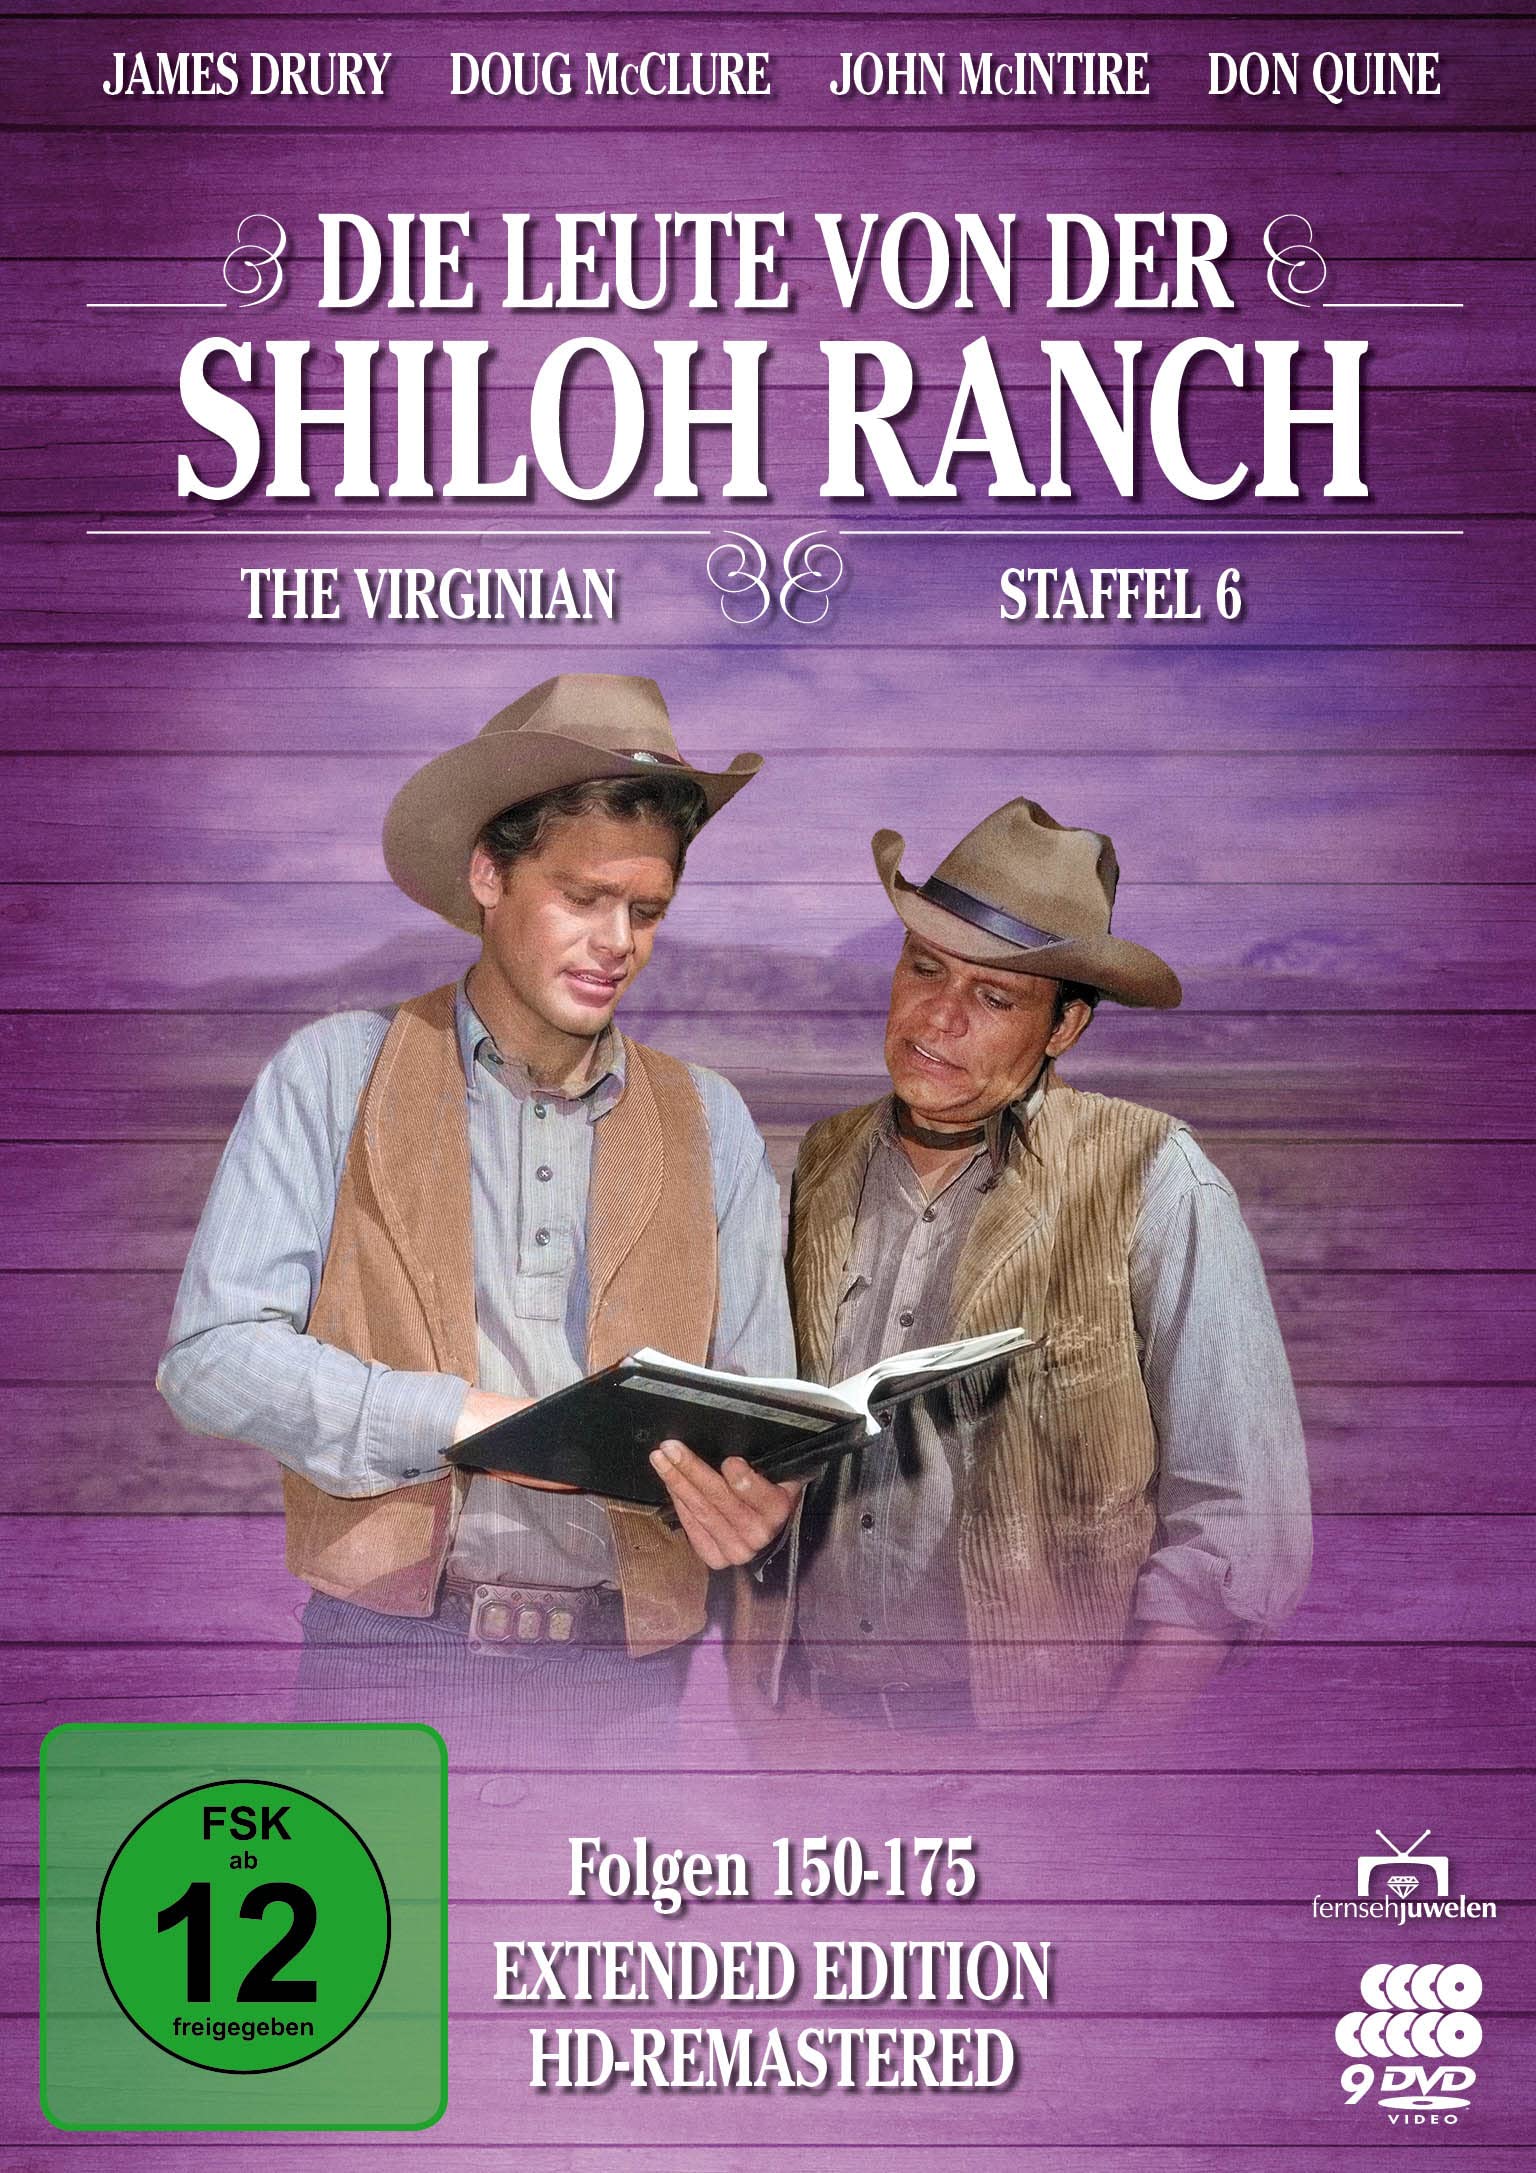 Die Leute von der Shiloh Ranch - Staffel 6 (HD-Remastered) (Fernsehjuwelen) (9 DVDs)